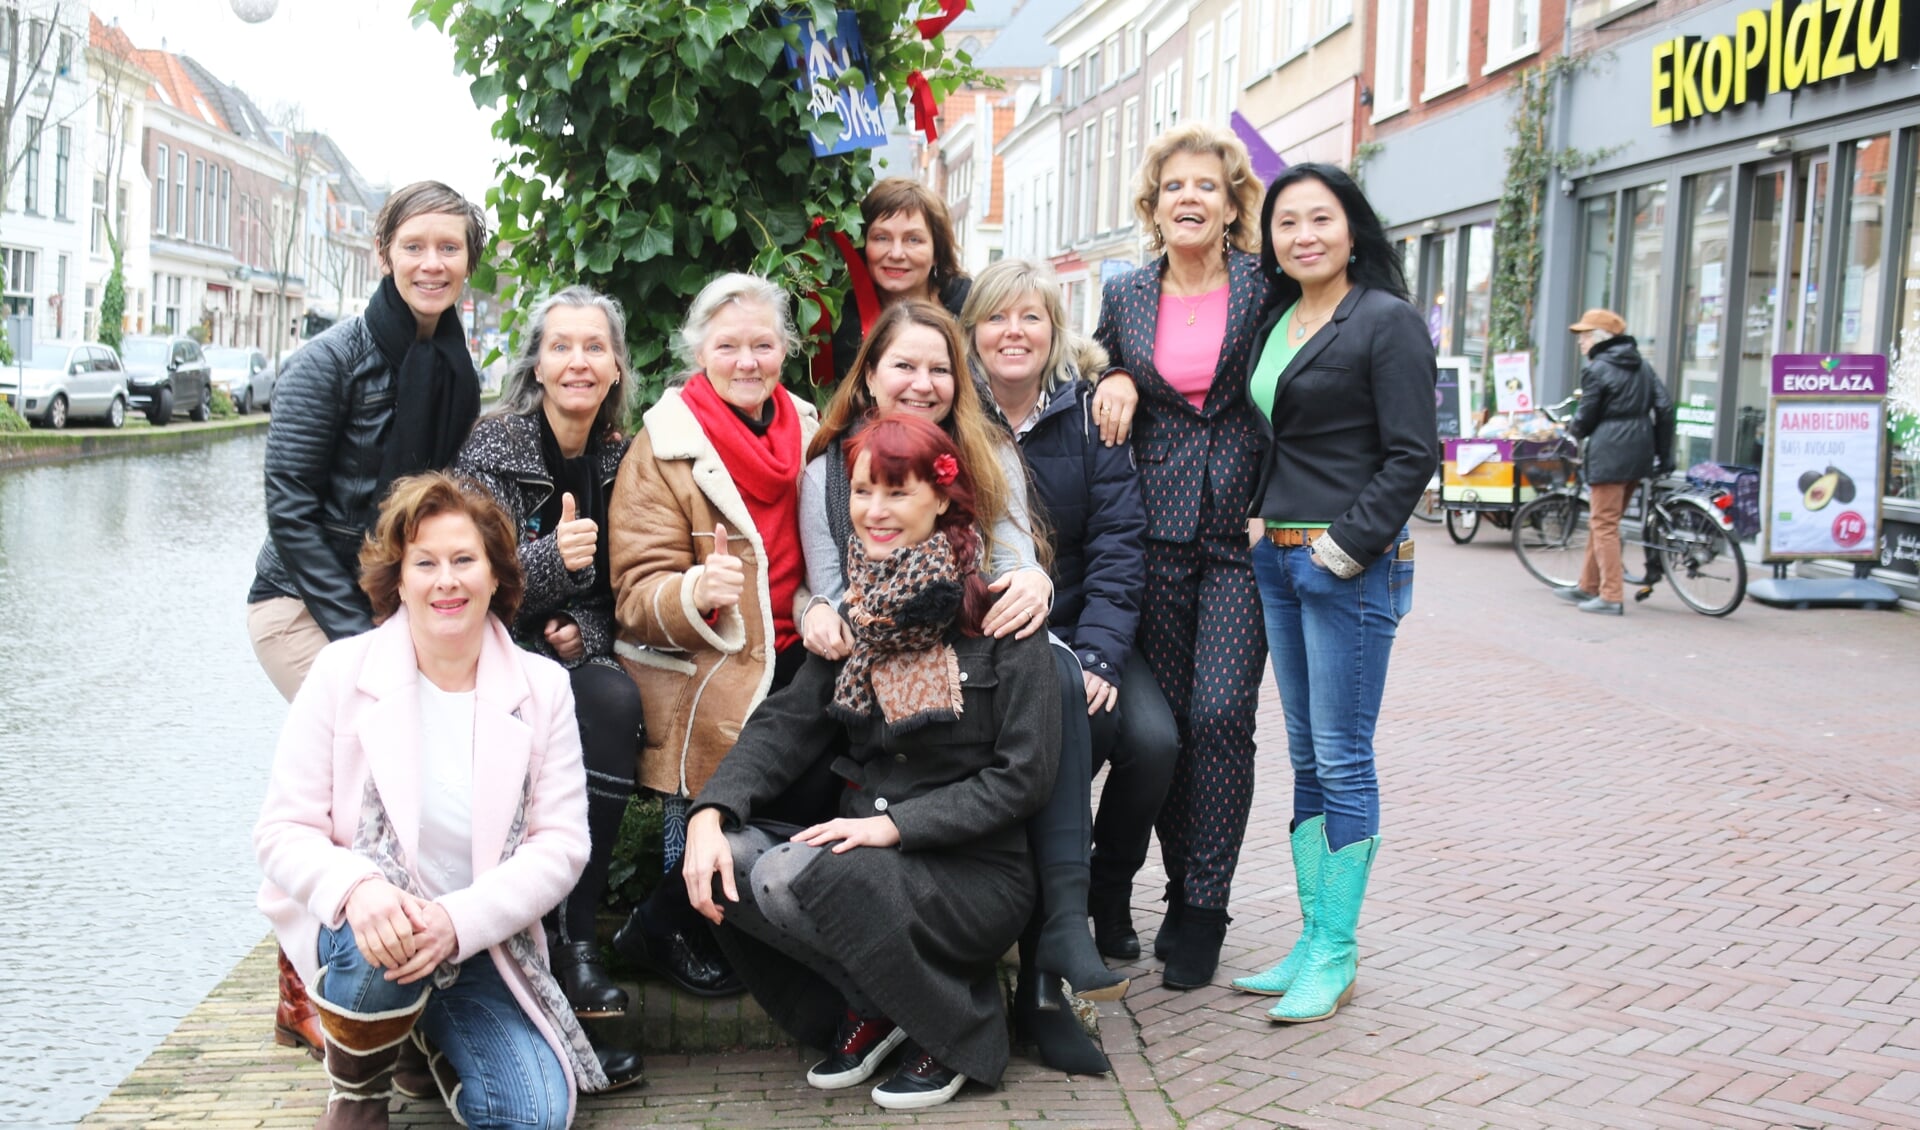 Alle 'juttende' vrouwen die ondernemen aan het Vrouwjuttenland verenigd. In het midden, met rode das, Ria van Dien.